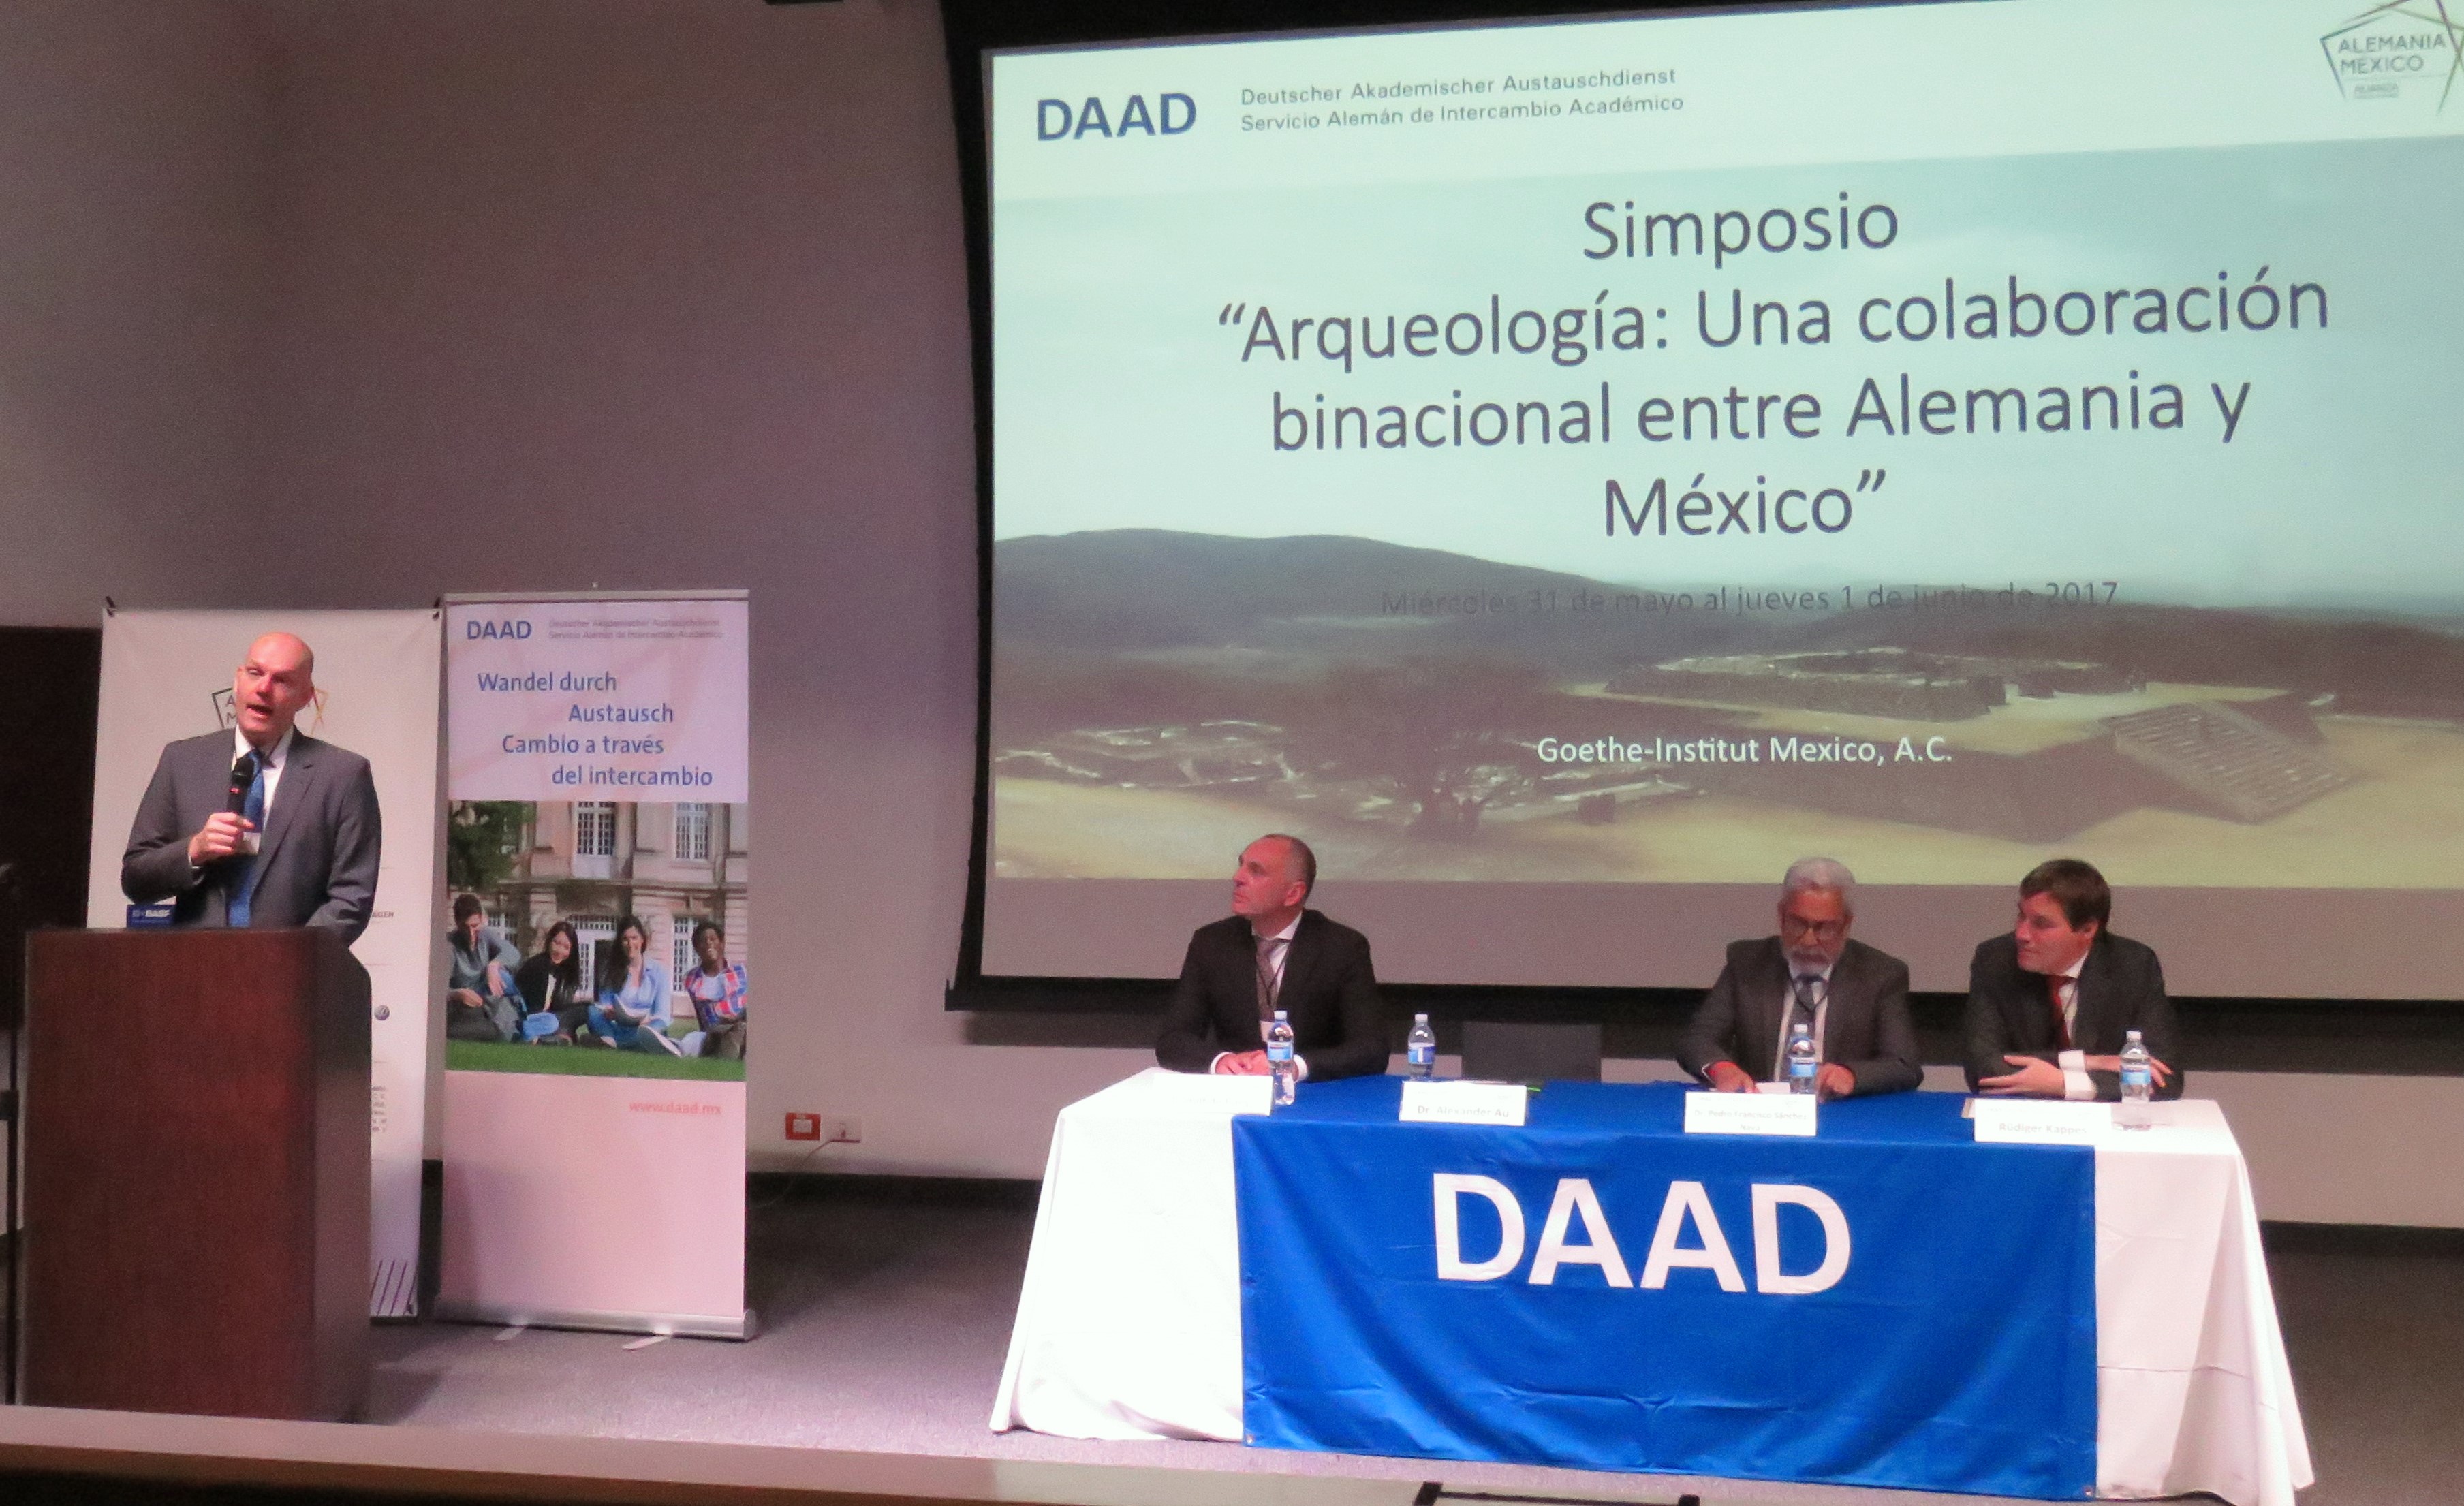 Saludo de Alexander Au, director del DAAD en México, en la apertura del simposio